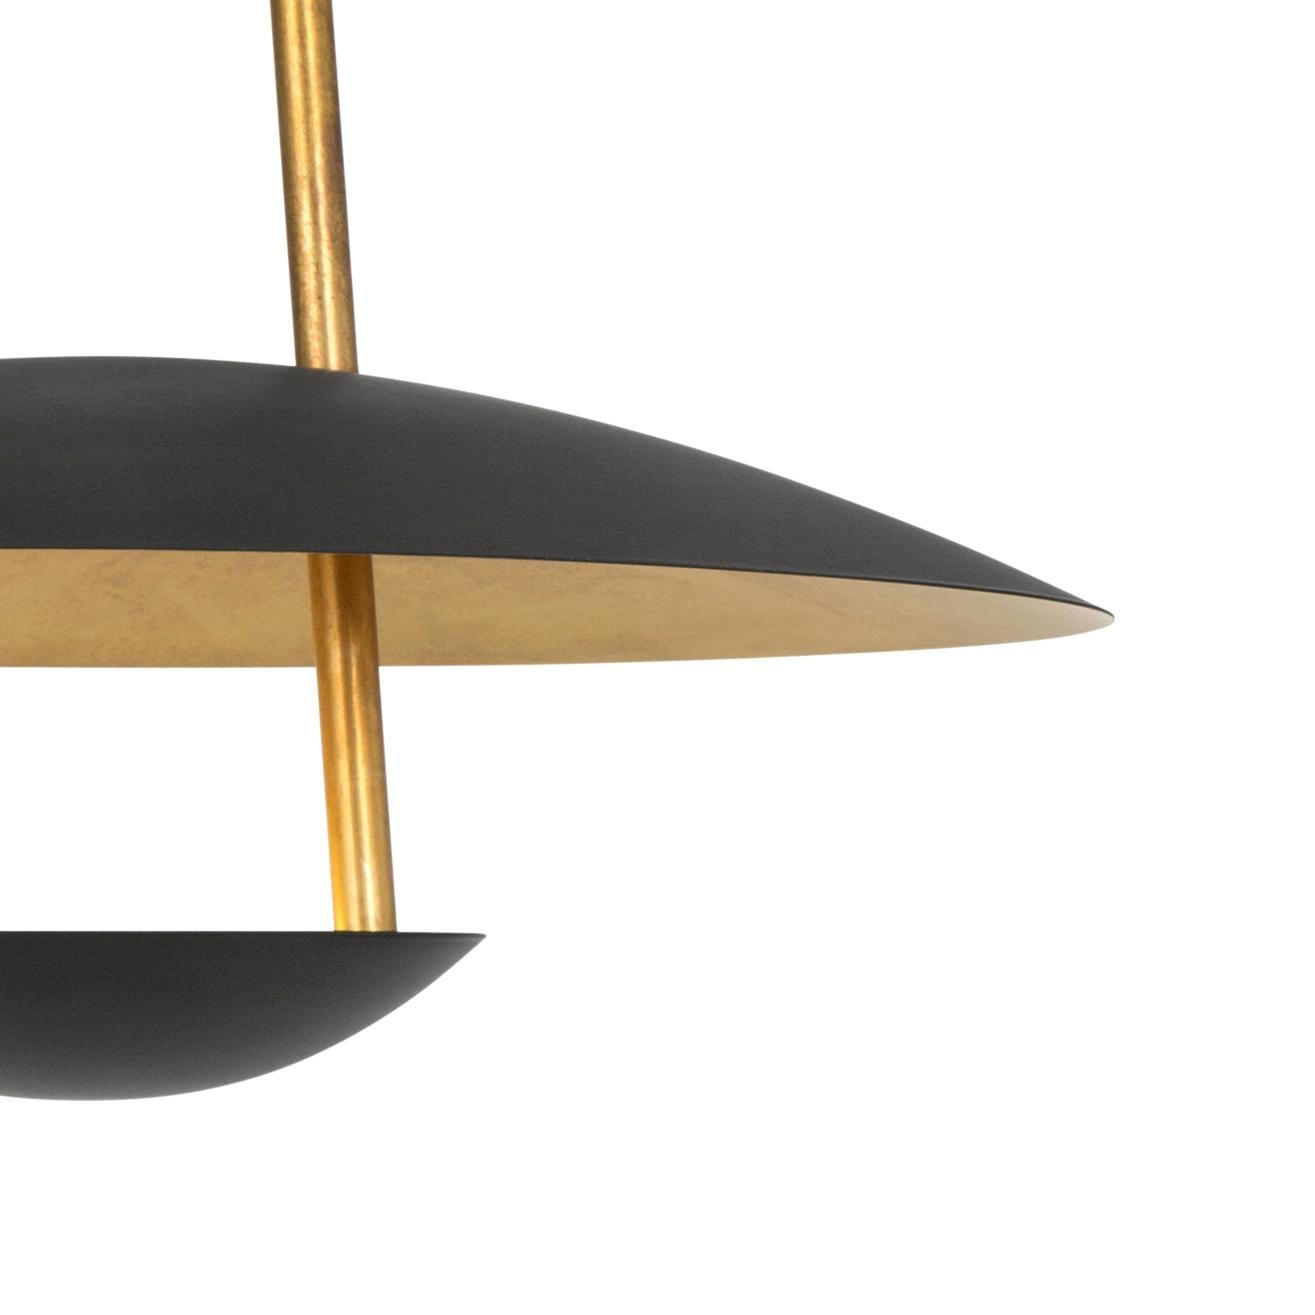 Johan Carpner Satellite 40 Ceiling Brass Black Lamp by Konsthantverk In New Condition For Sale In Barcelona, Barcelona